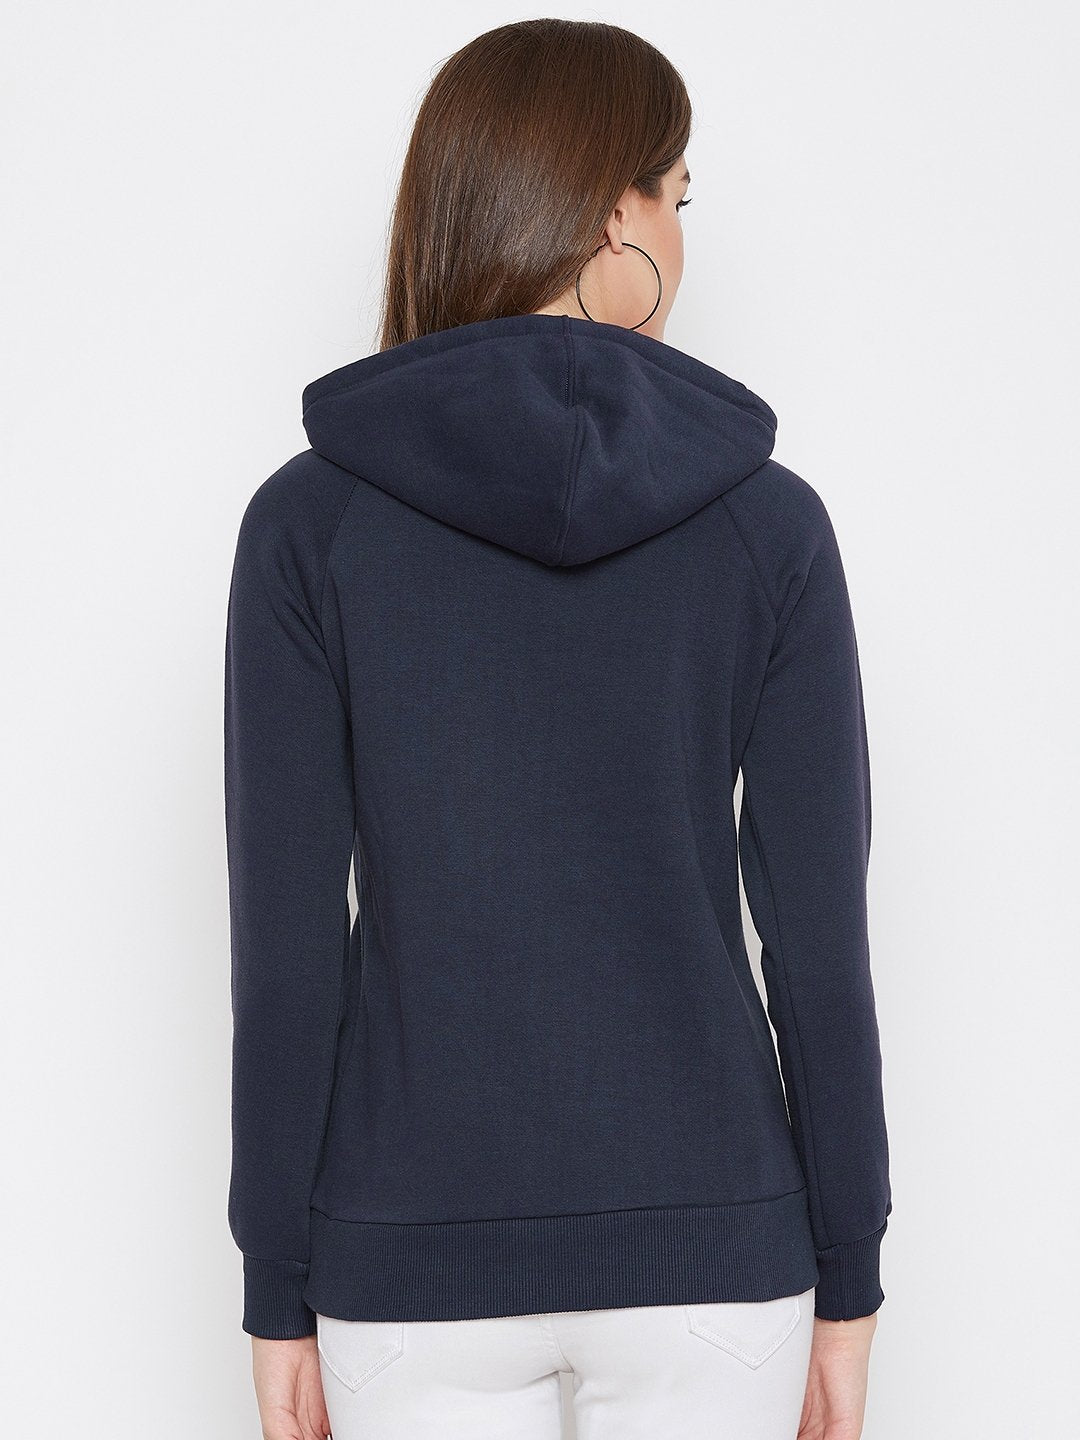 Women's Navy Blue Printed Long Sleeves Hooded Sweatshirt